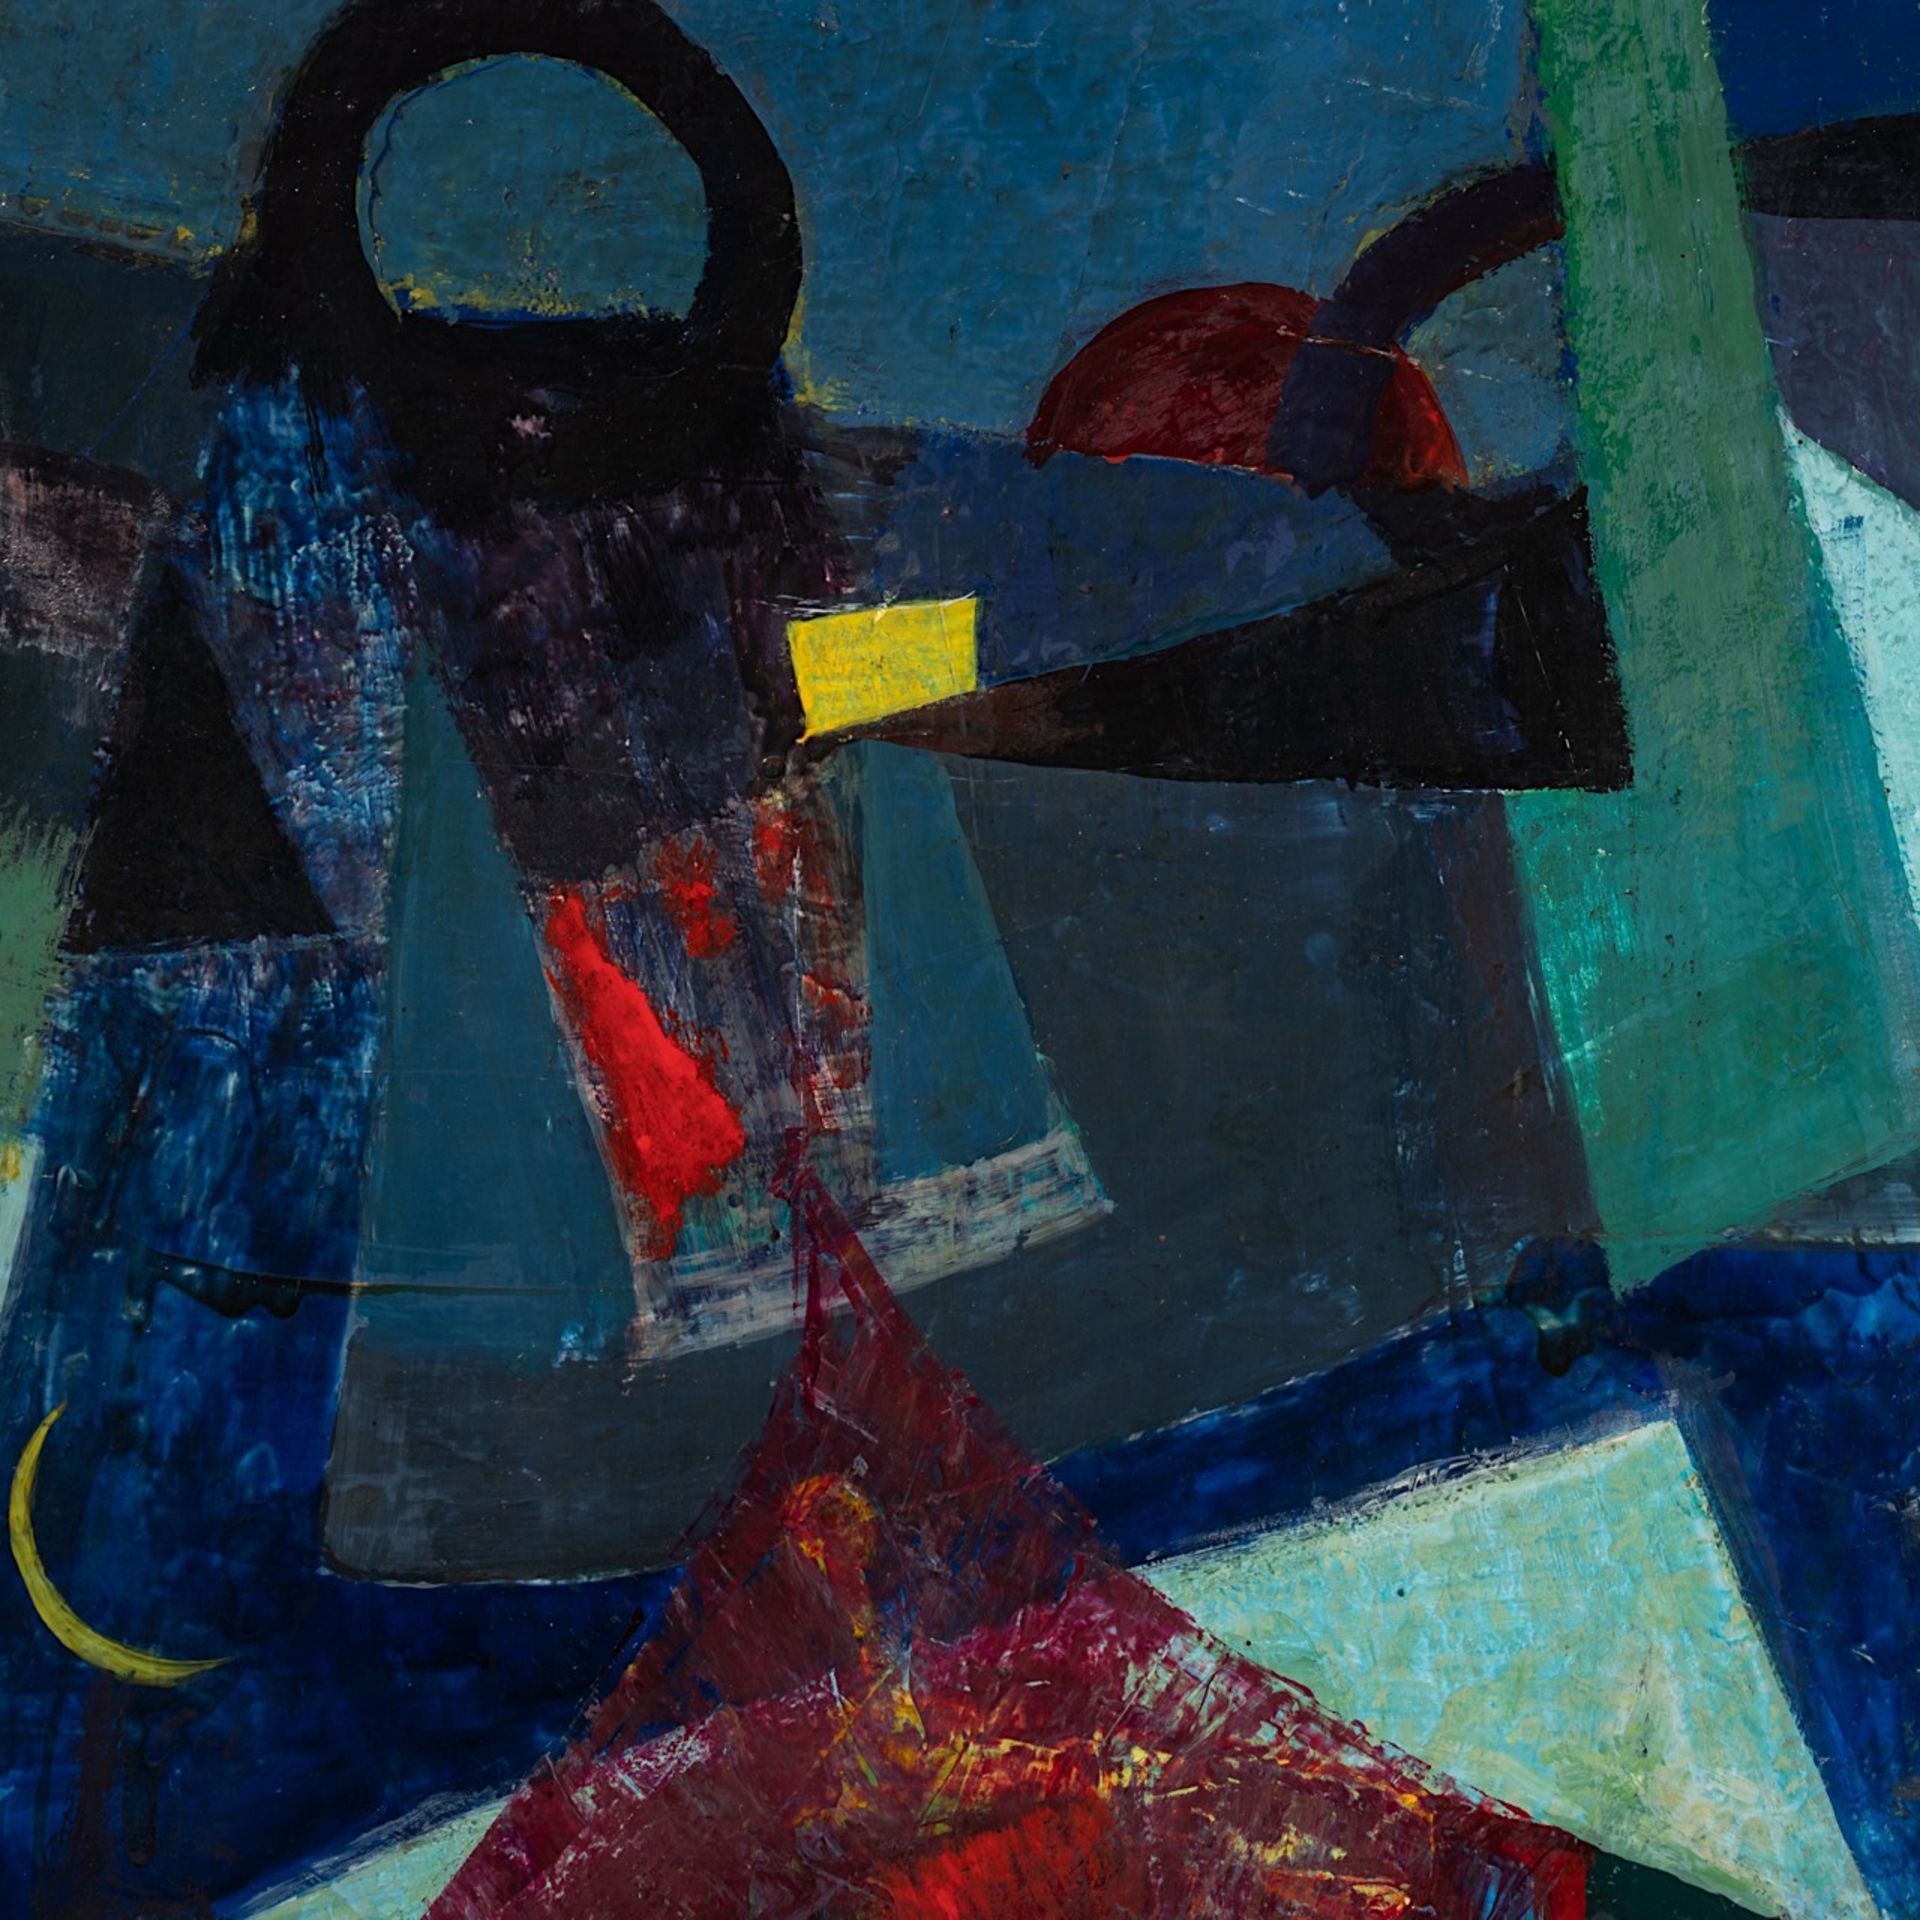 Jeanne Portenart (1911-1992), 'Le Magicien', 1958, oil on board 100 x 70 cm. (39.3 x 27.5 in.) - Image 6 of 7